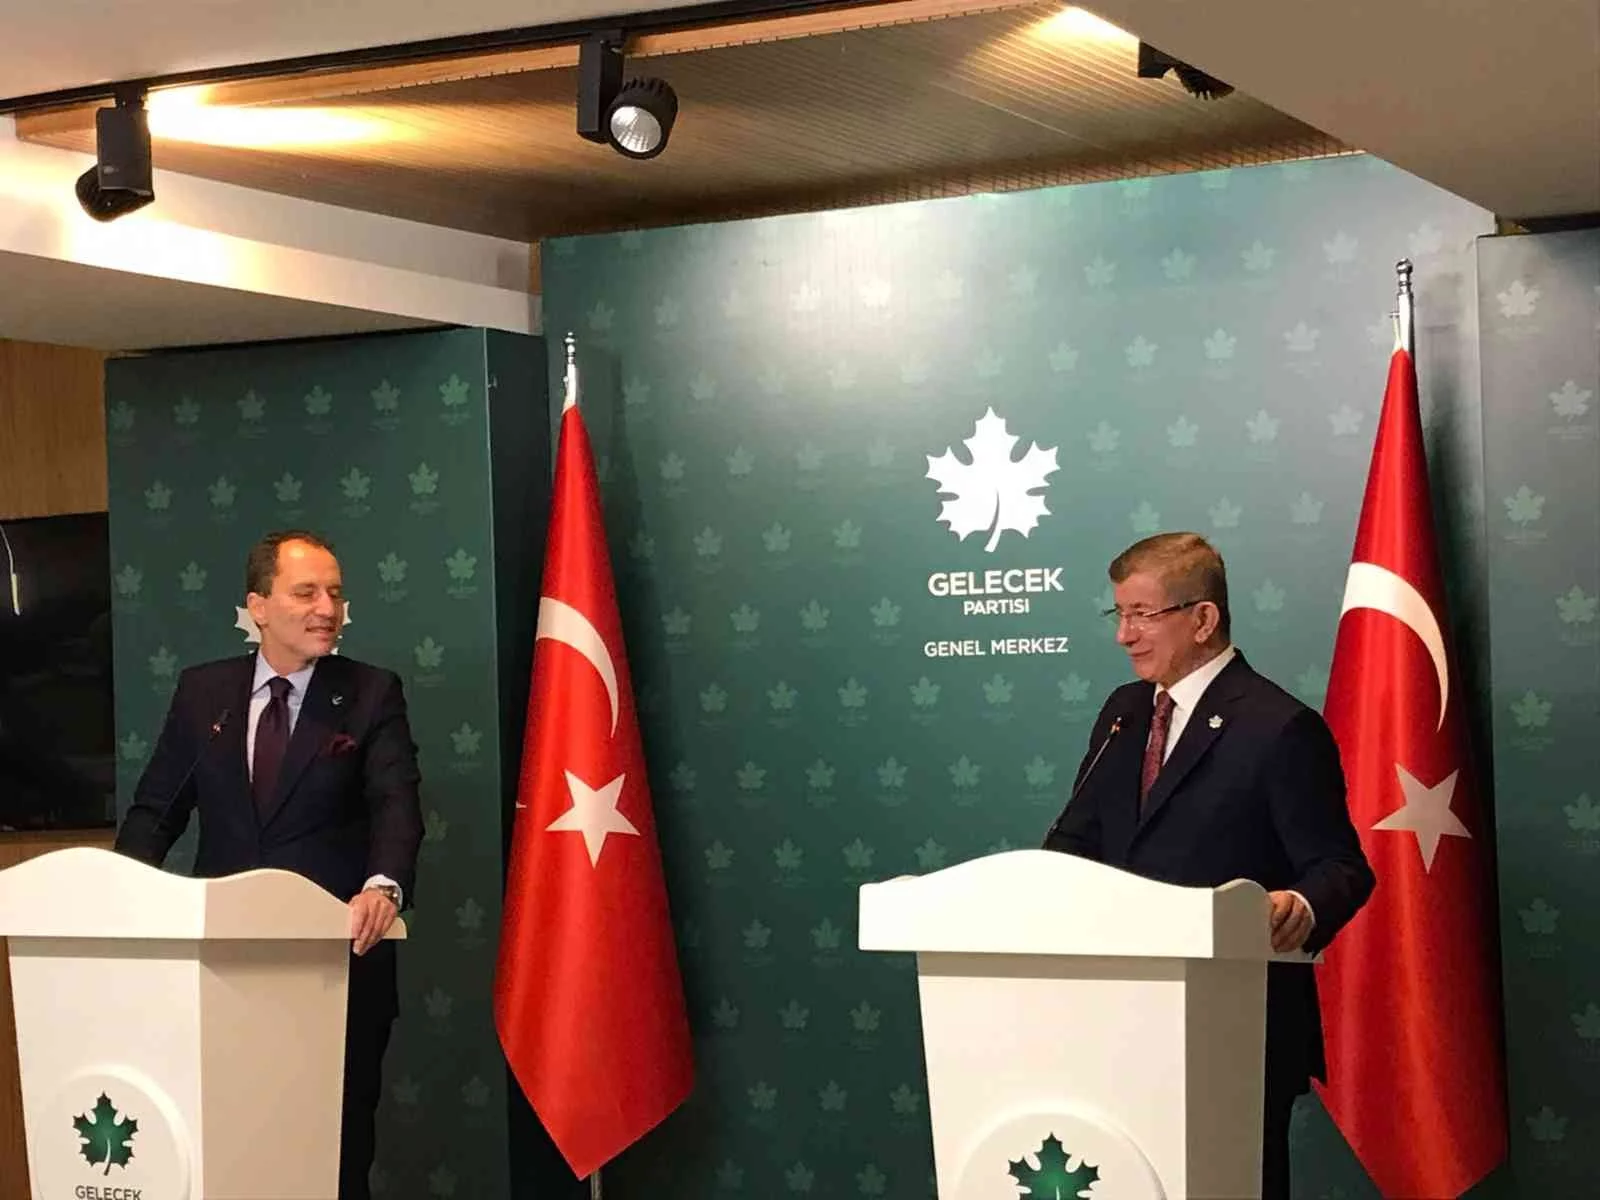 Yeniden Refah Partisi Genel Başkanı Erbakan, Davutoğlu ile bir araya geldi